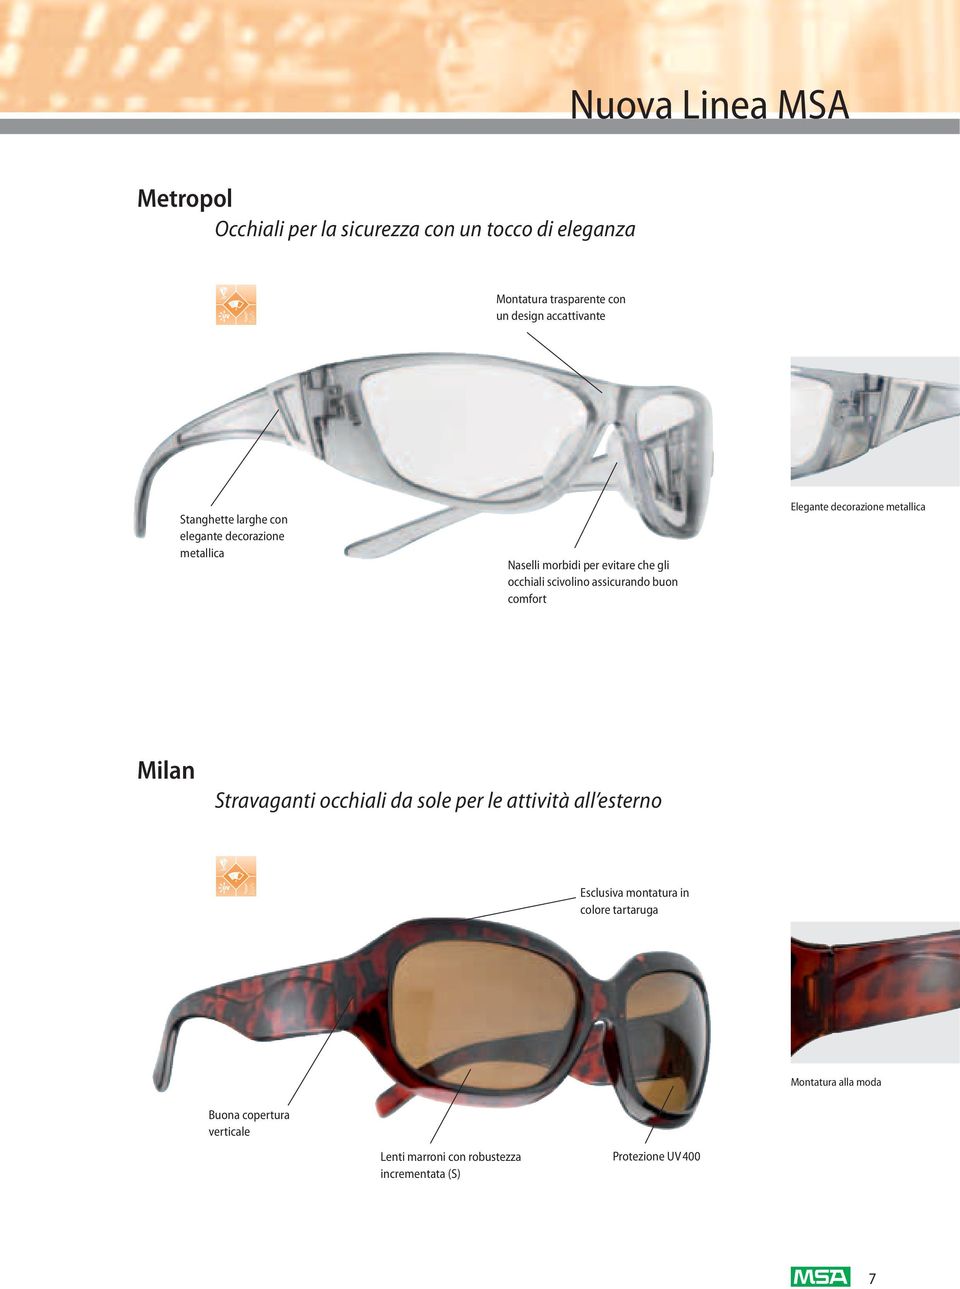 comfort Elegante decorazione metallica Milan Stravaganti occhiali da sole per le attività all esterno Esclusiva montatura in